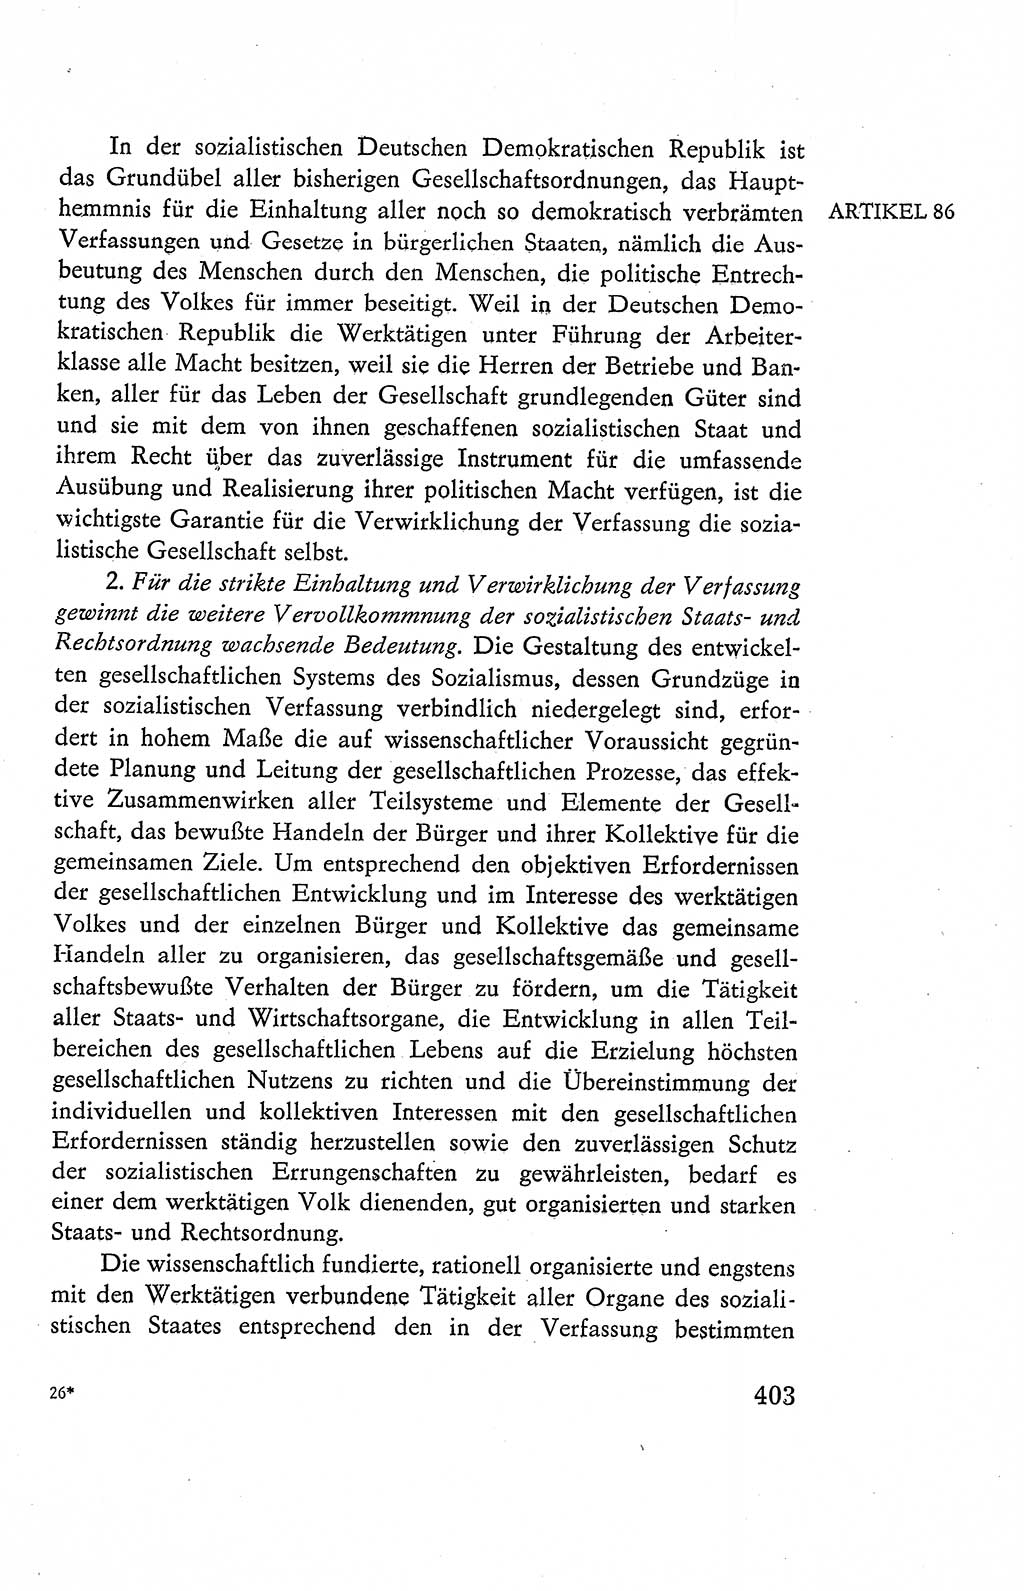 Verfassung der Deutschen Demokratischen Republik (DDR), Dokumente, Kommentar 1969, Band 2, Seite 403 (Verf. DDR Dok. Komm. 1969, Bd. 2, S. 403)